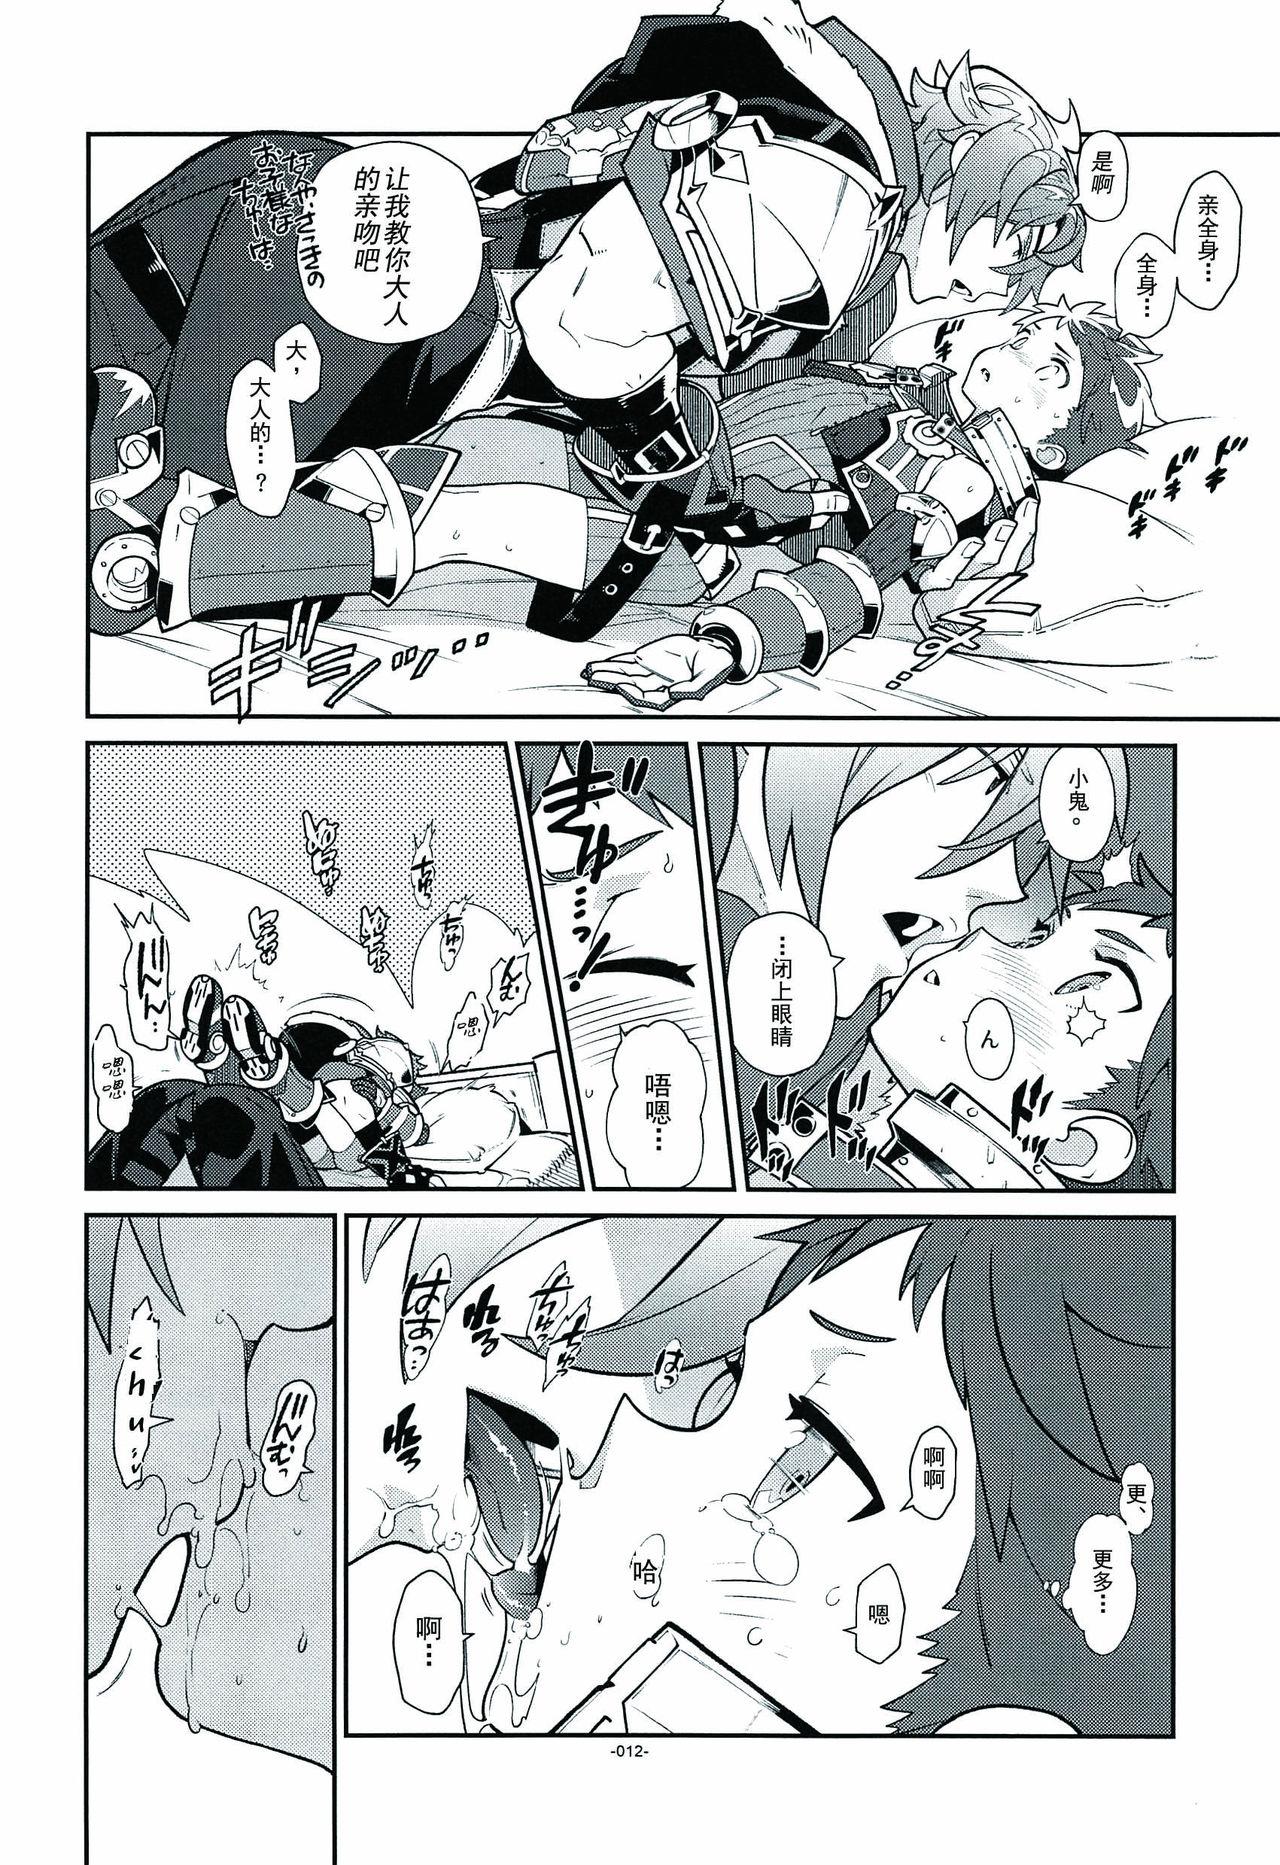 Adorable Kizuna Power. ∞ - Xenoblade chronicles 2 Huge Boobs - Page 10